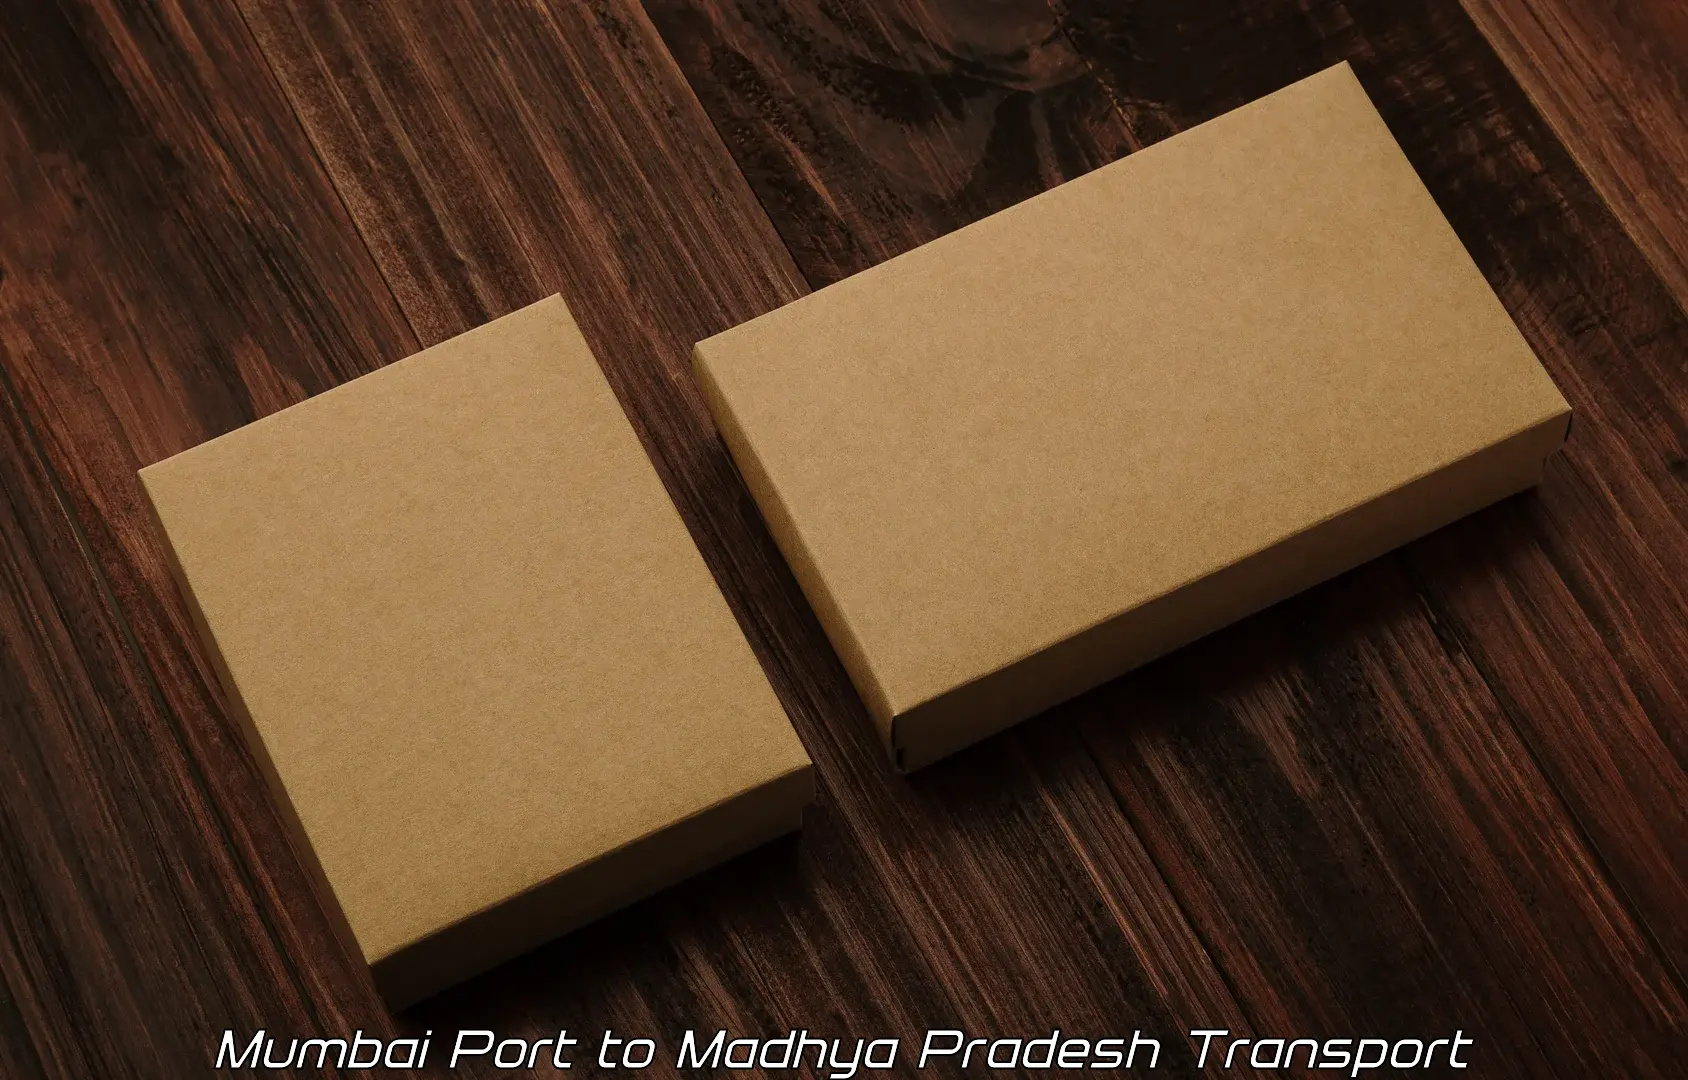 Furniture transport service Mumbai Port to Sausar